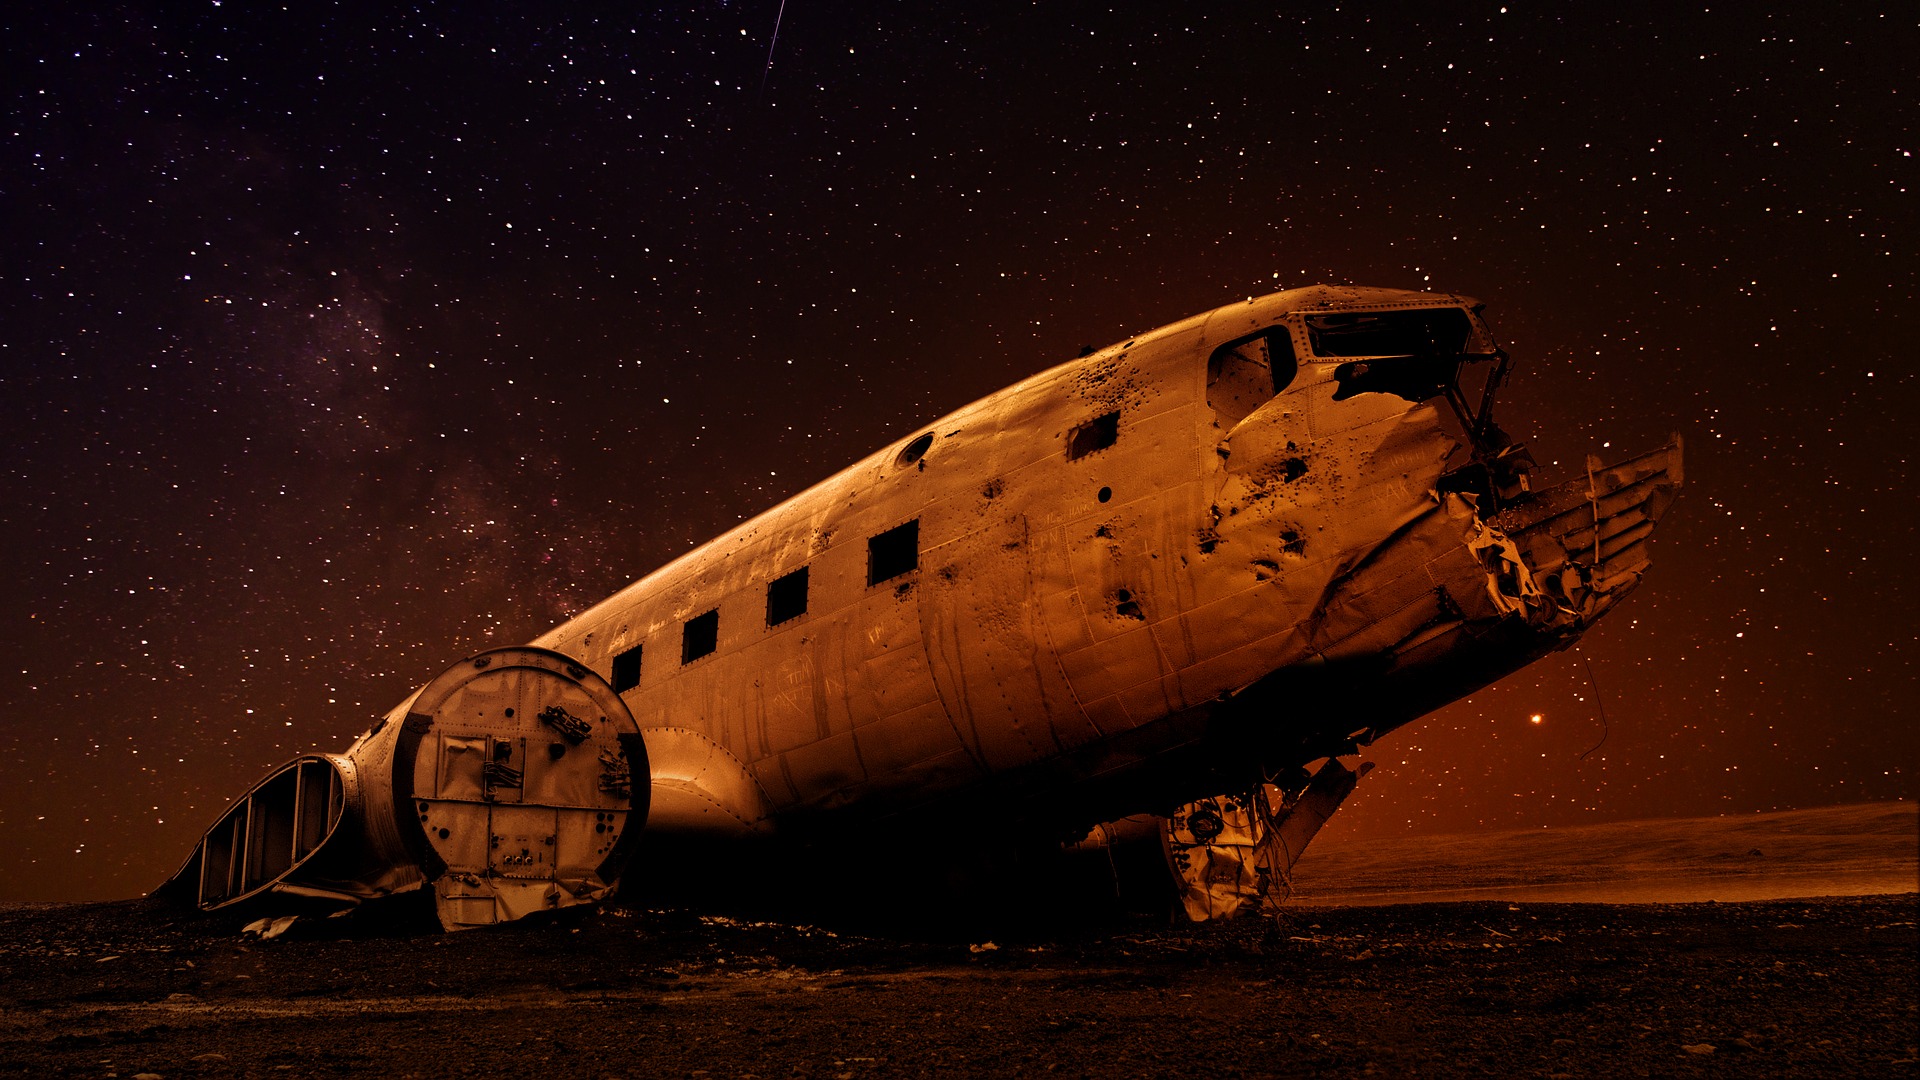 Wreck of plane, Sólheimasandur, Iceland